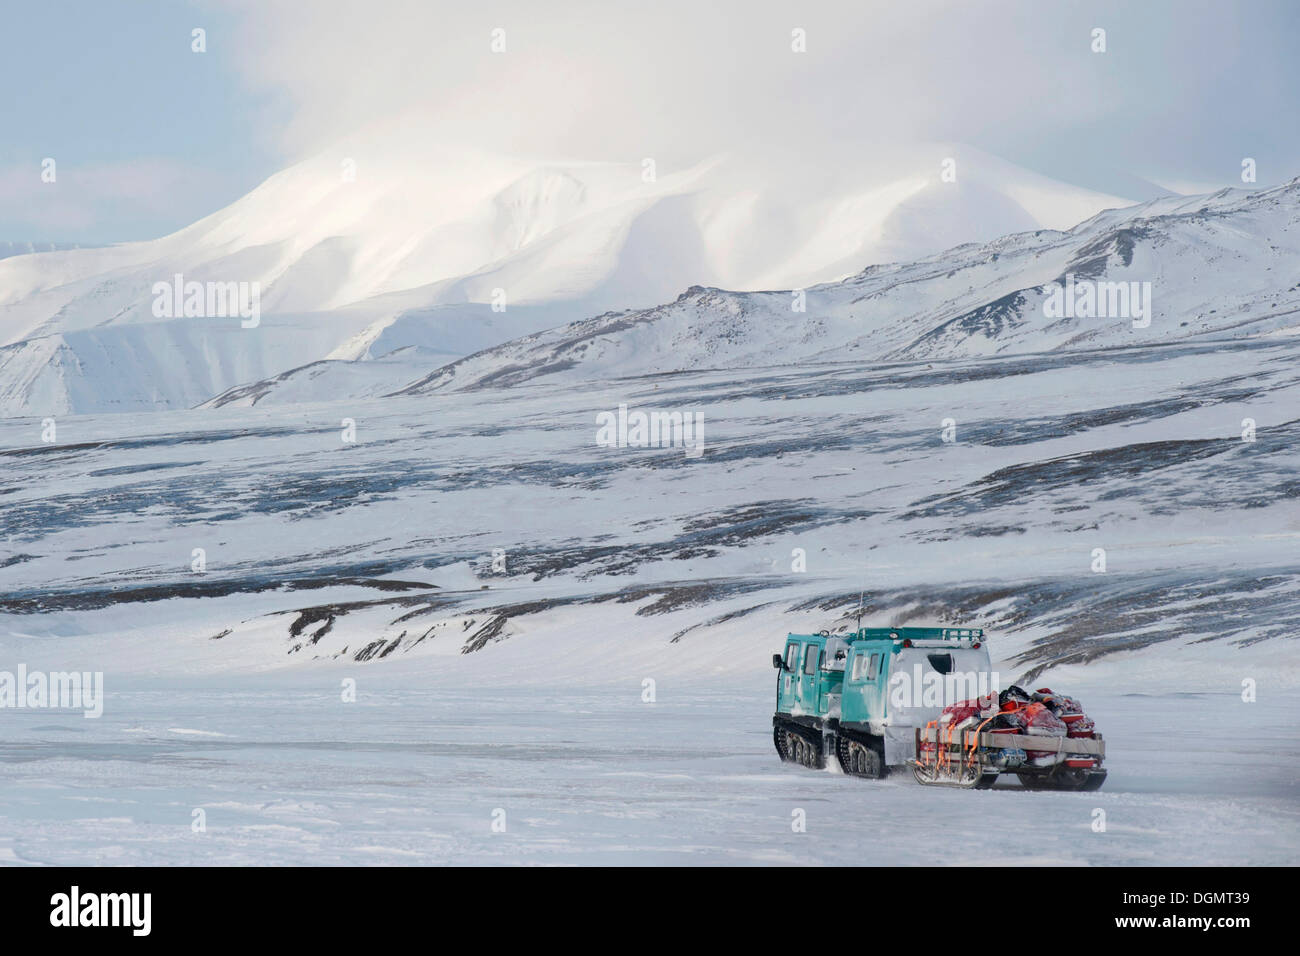 Beltwagon, verfolgt Fahrzeug, den Transport von Passagieren und Gepäck auf einem Schneemobil Track, Adventdalen, Spitzbergen, Svalbard Stockfoto